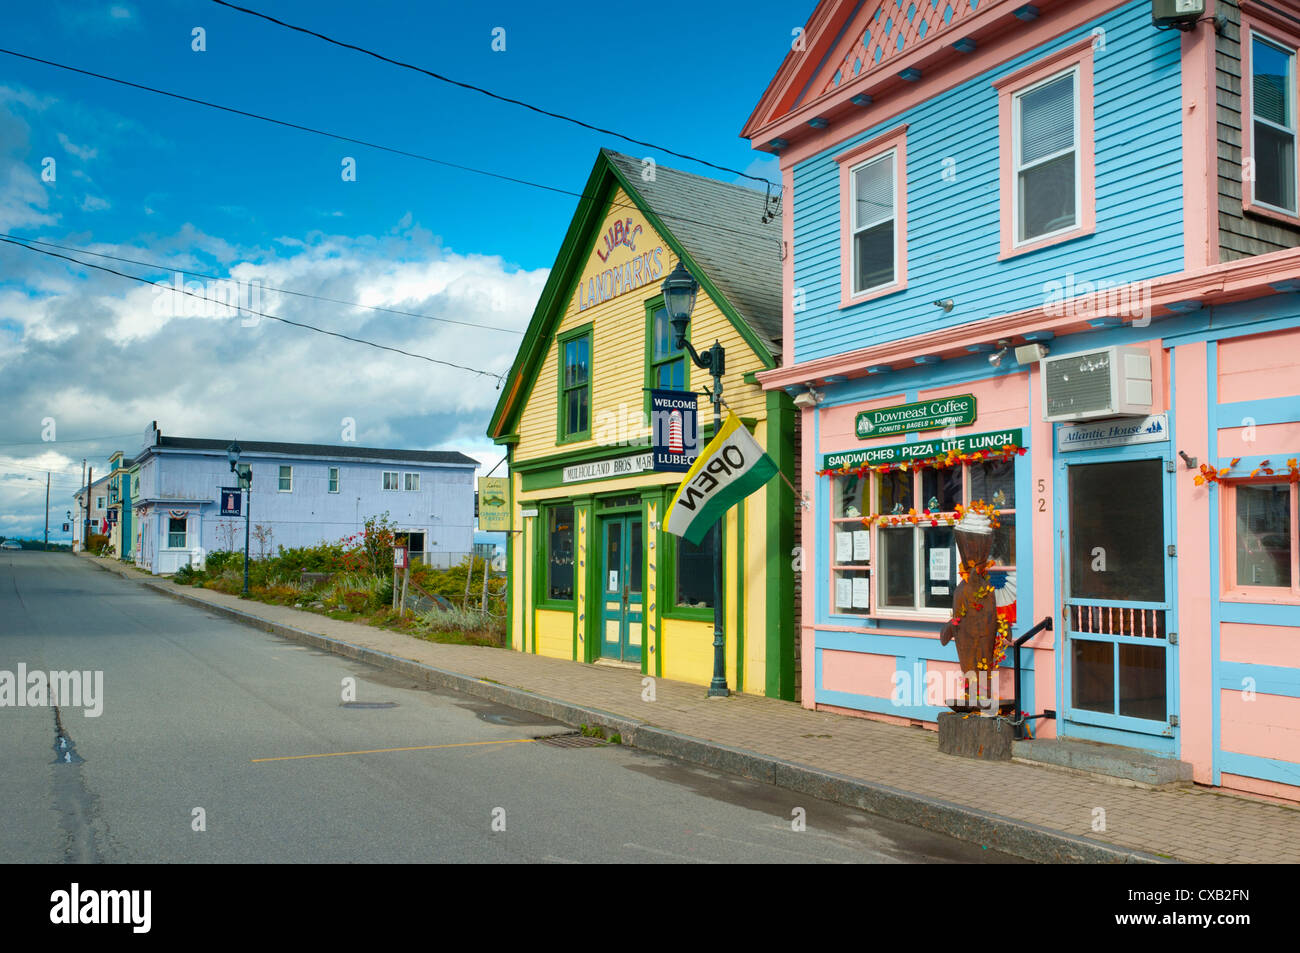 Lubec, la ville la plus à l'est dans la zone continentale des États-Unis, le Maine, la Nouvelle Angleterre, États-Unis d'Amérique, Amérique du Nord Banque D'Images